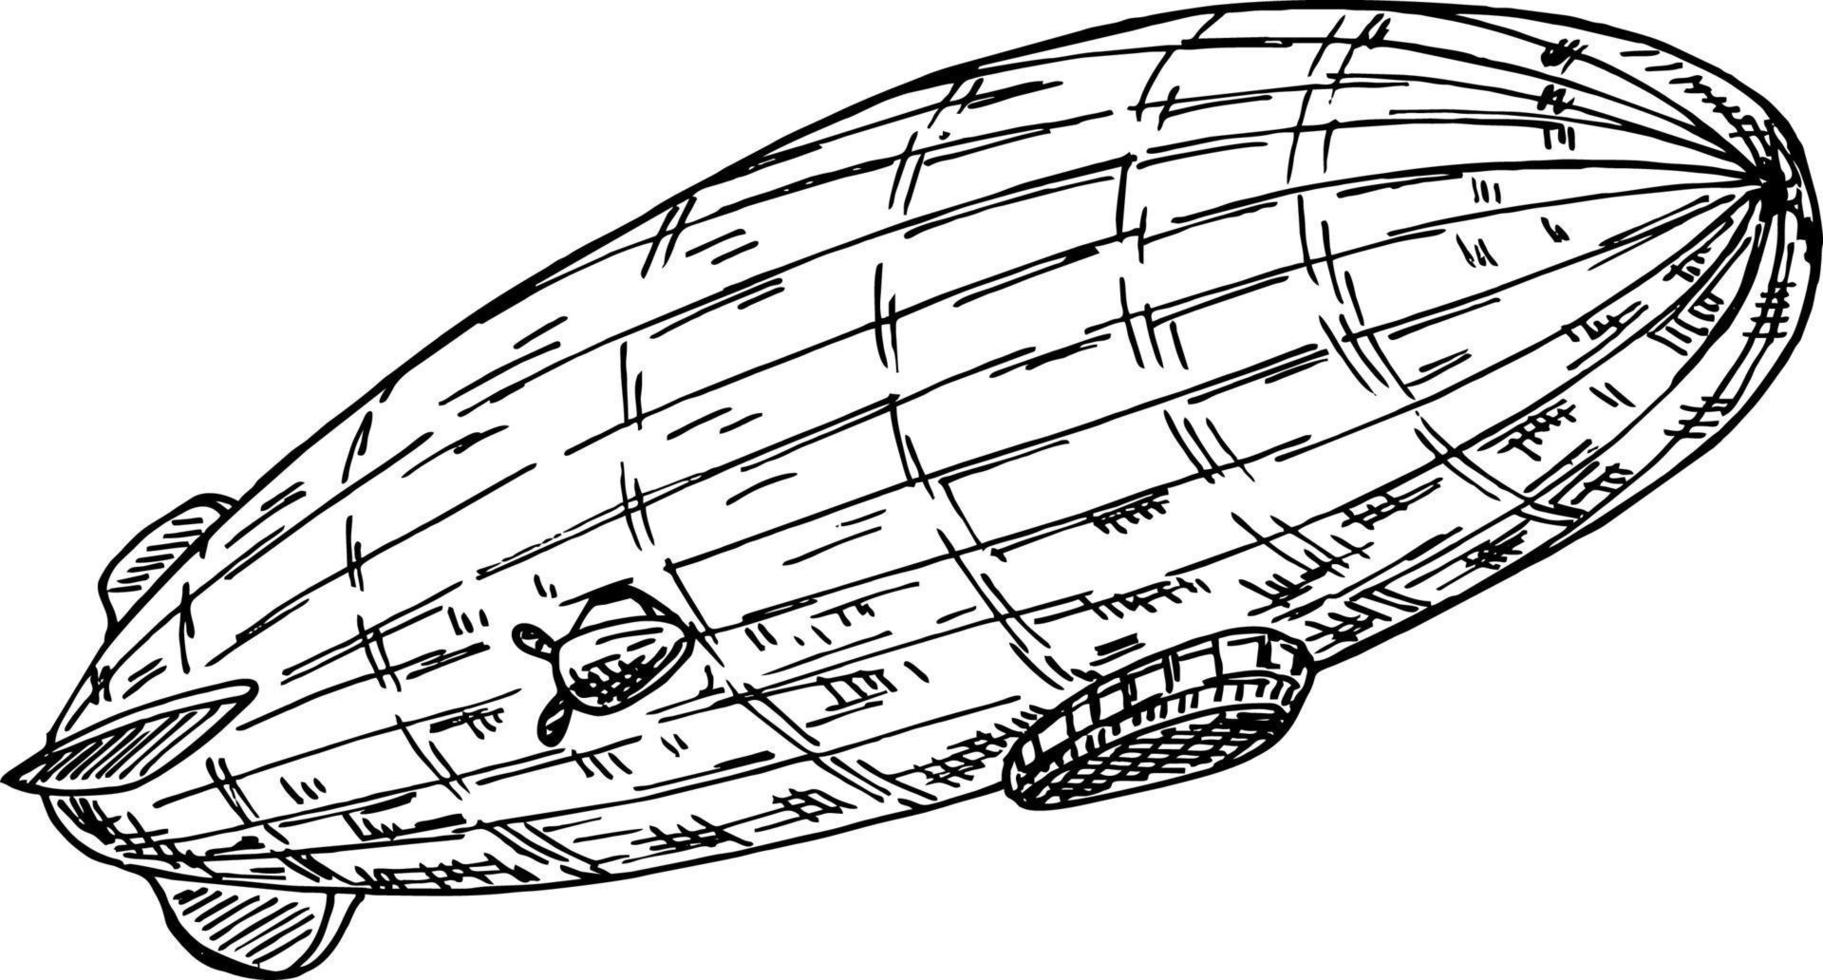 Flying airship zeppelin vector